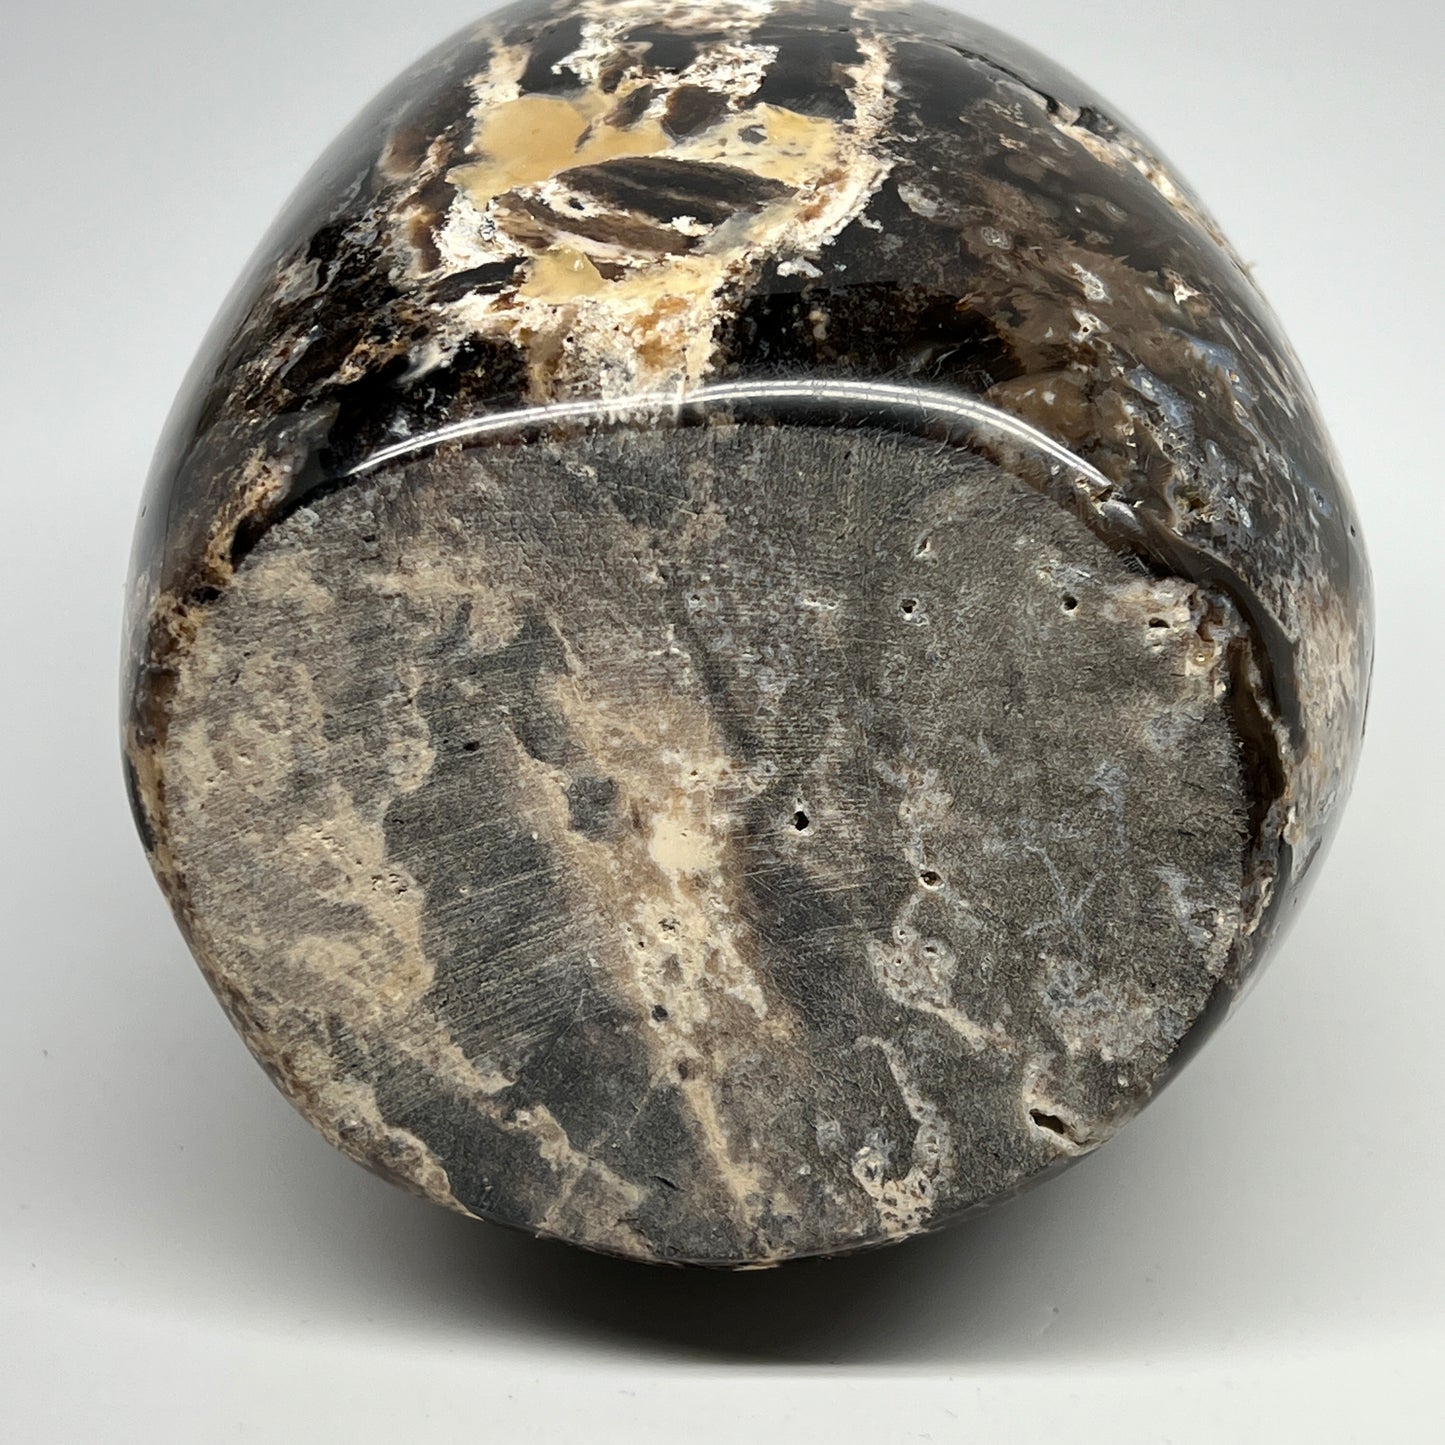 3560g,8"x5"x4.2" Black Opal Freeform Polished Gemstone @Madagascar,B21105